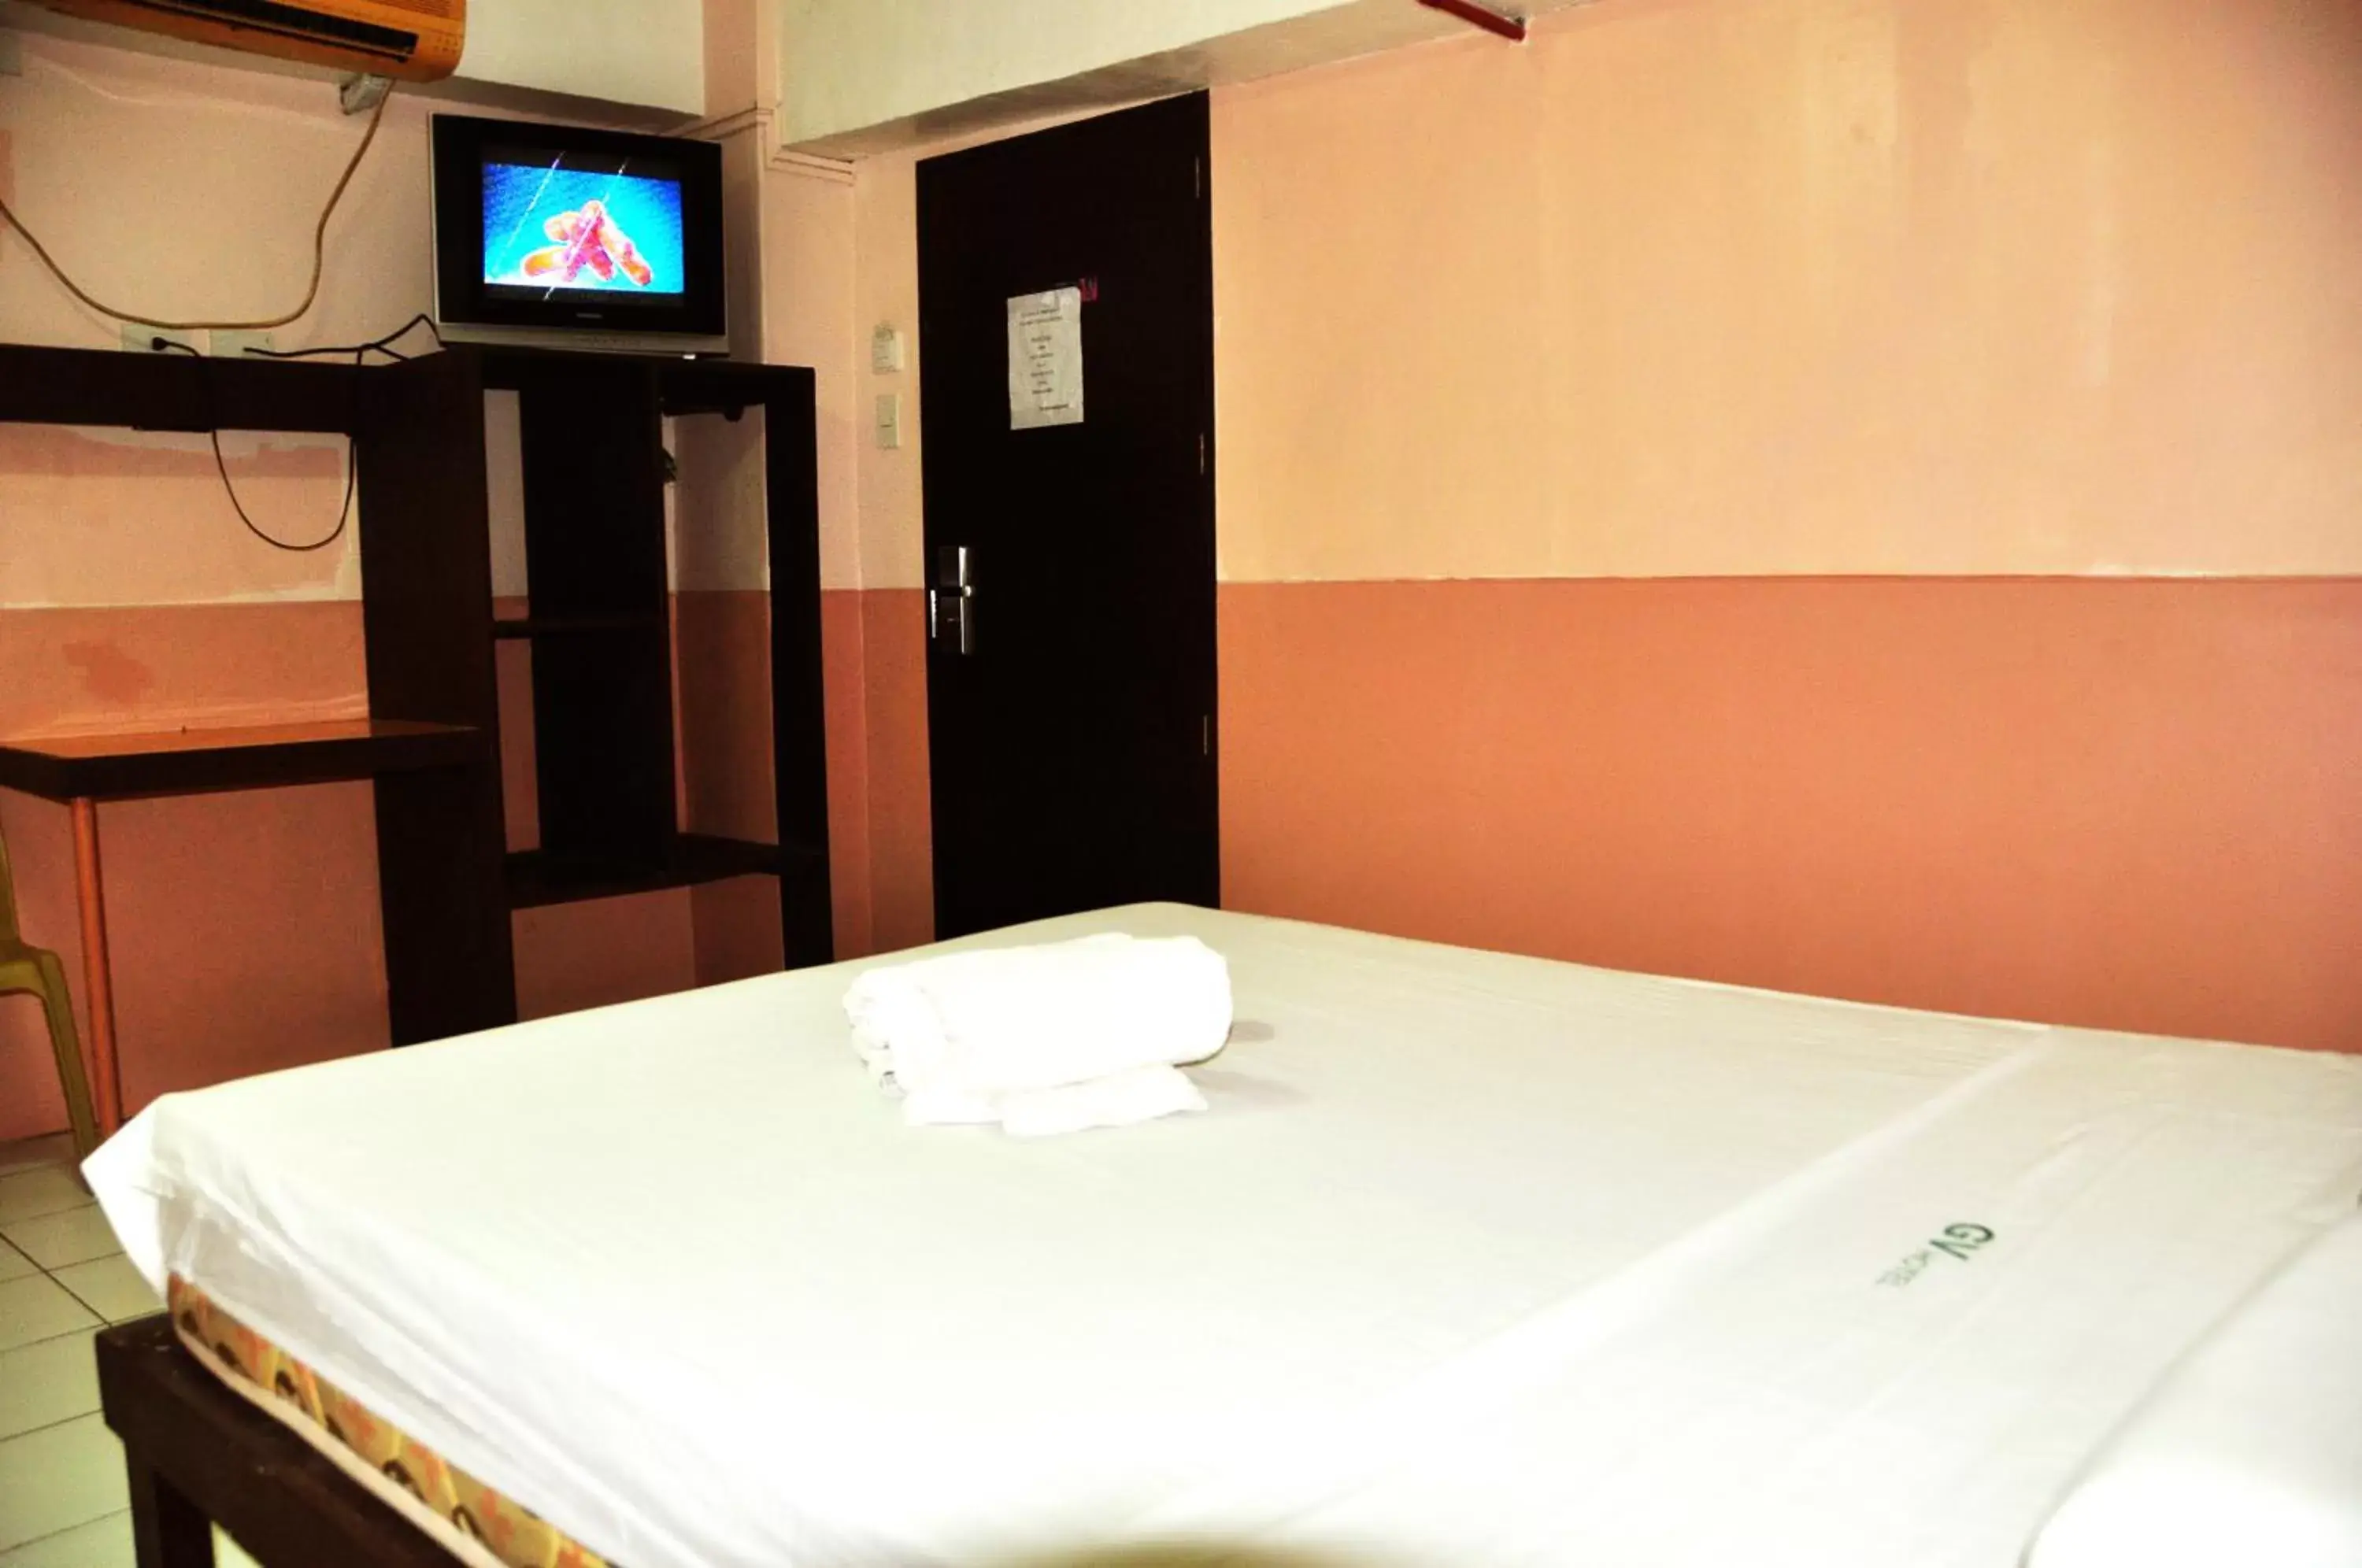 Bed, Room Photo in GV Hotel - Lapu-Lapu City